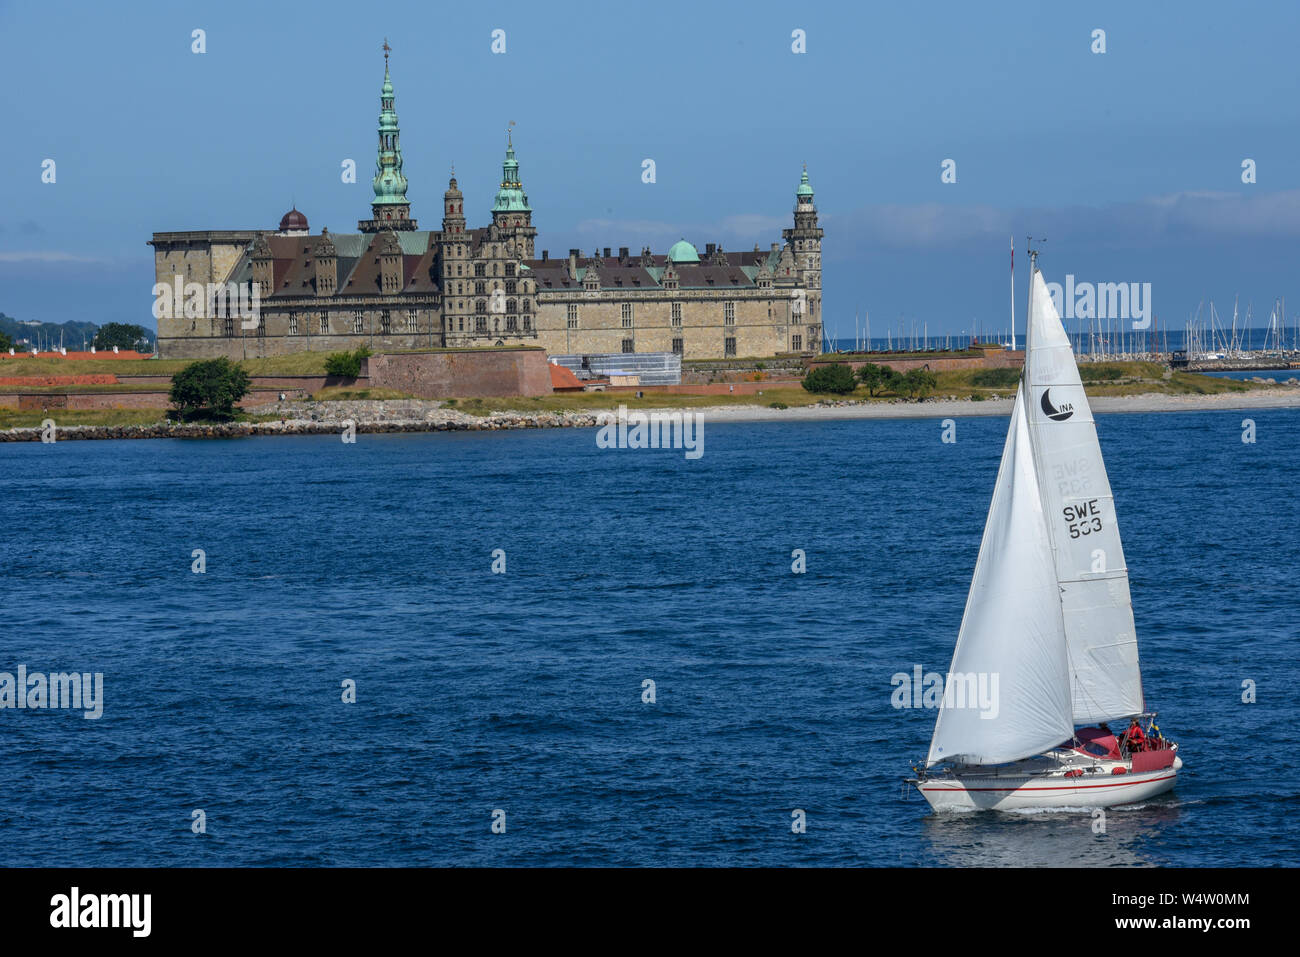 Helsingor, Denmark - 29 June 2019: Kronborg castle at Helsingor on Denmark Stock Photo